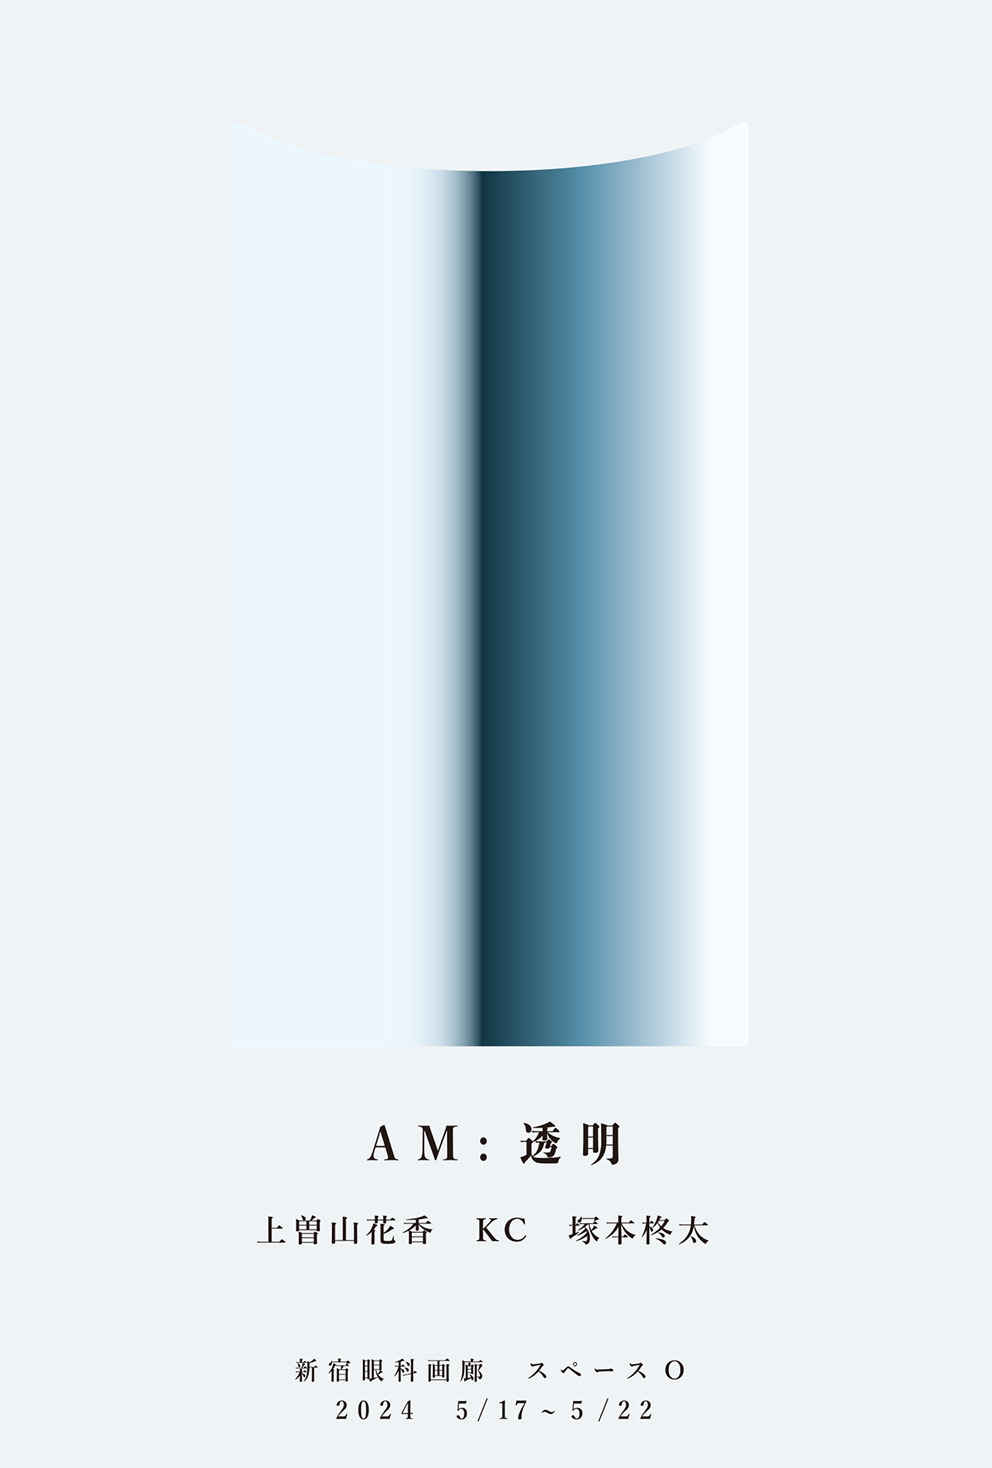 「AM：透明」 上曽山花香、KC、塚本柊太